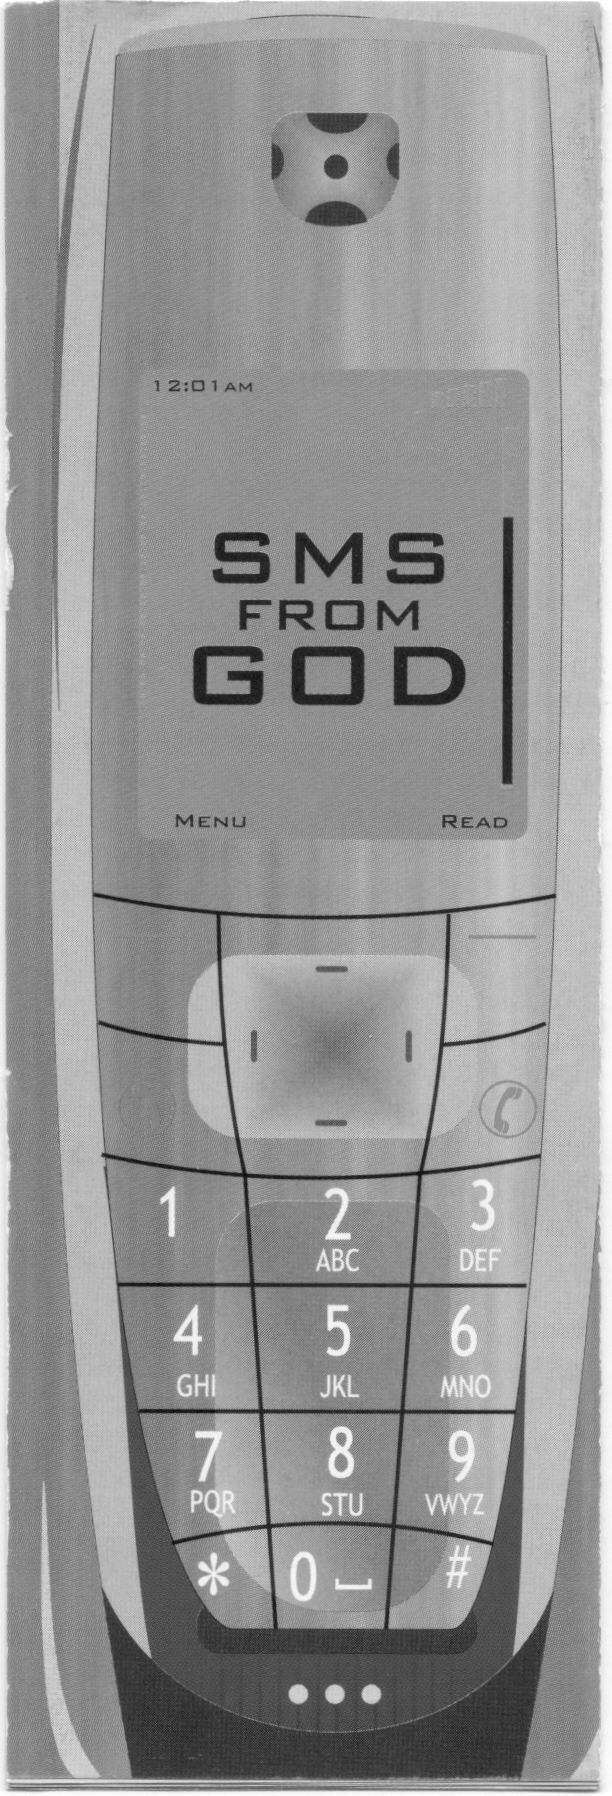 Spurensuche für Jugendlich - SMS from god